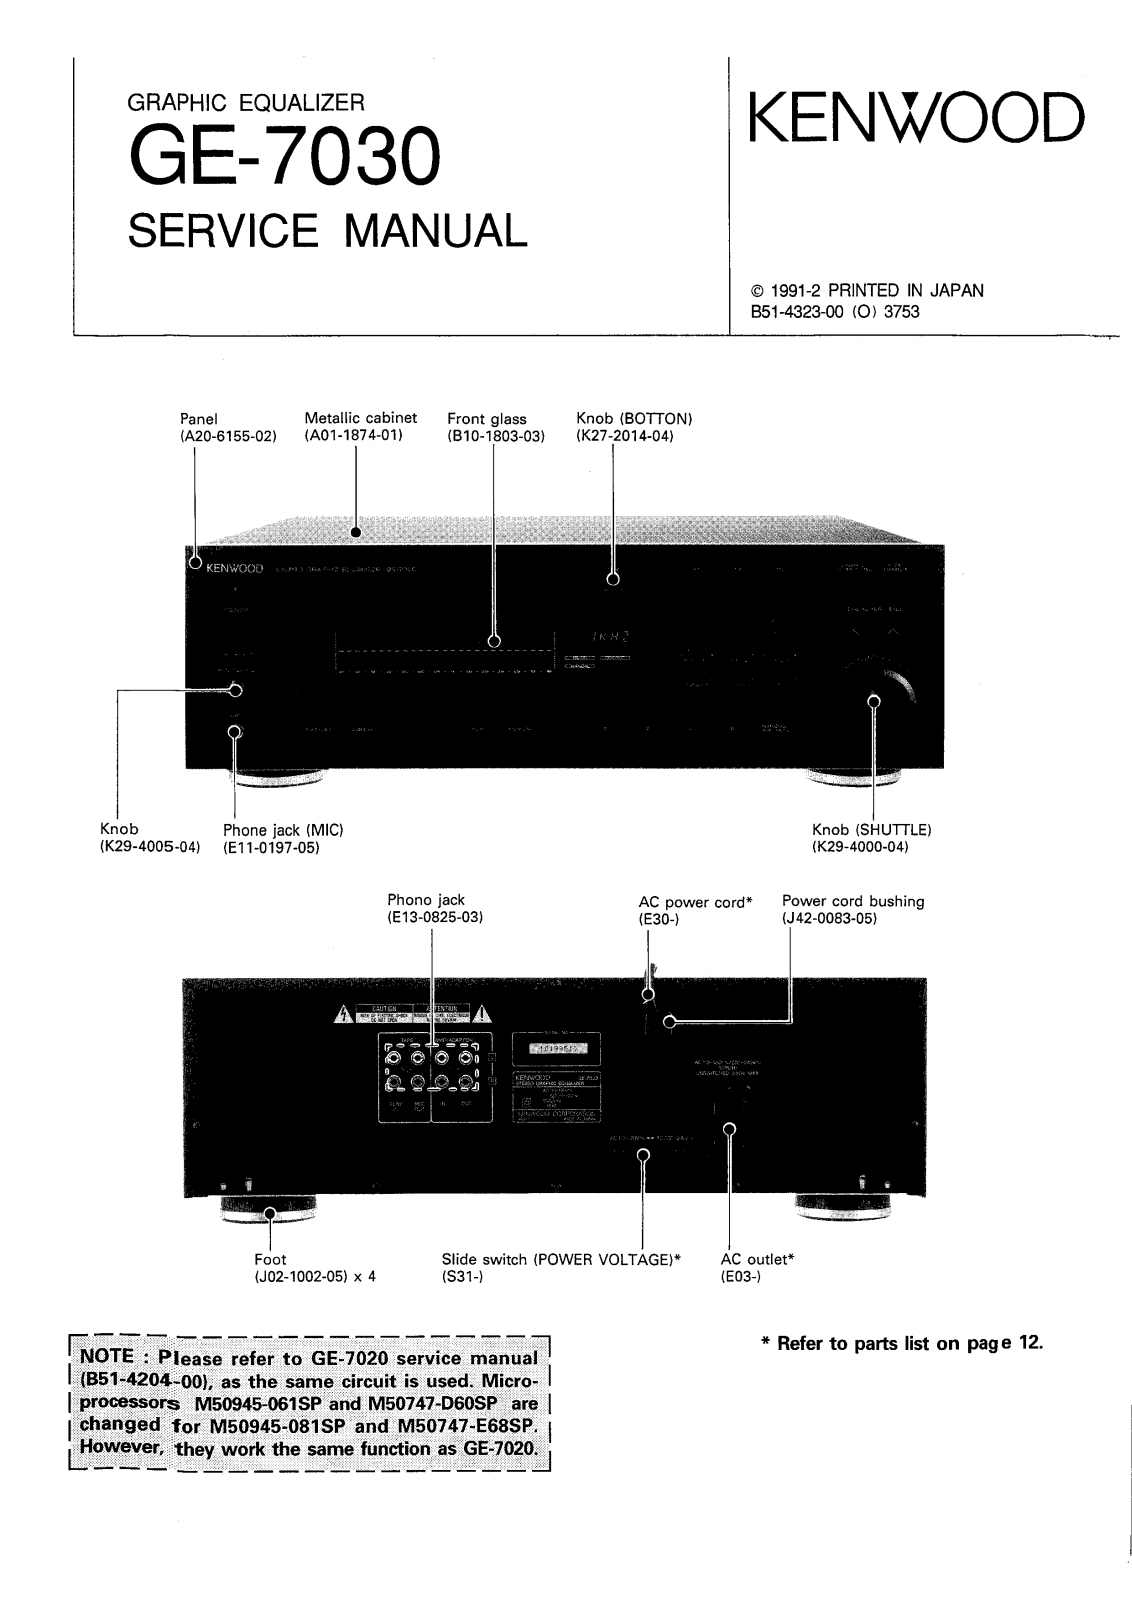 Kenwood GE-7030 Service manual